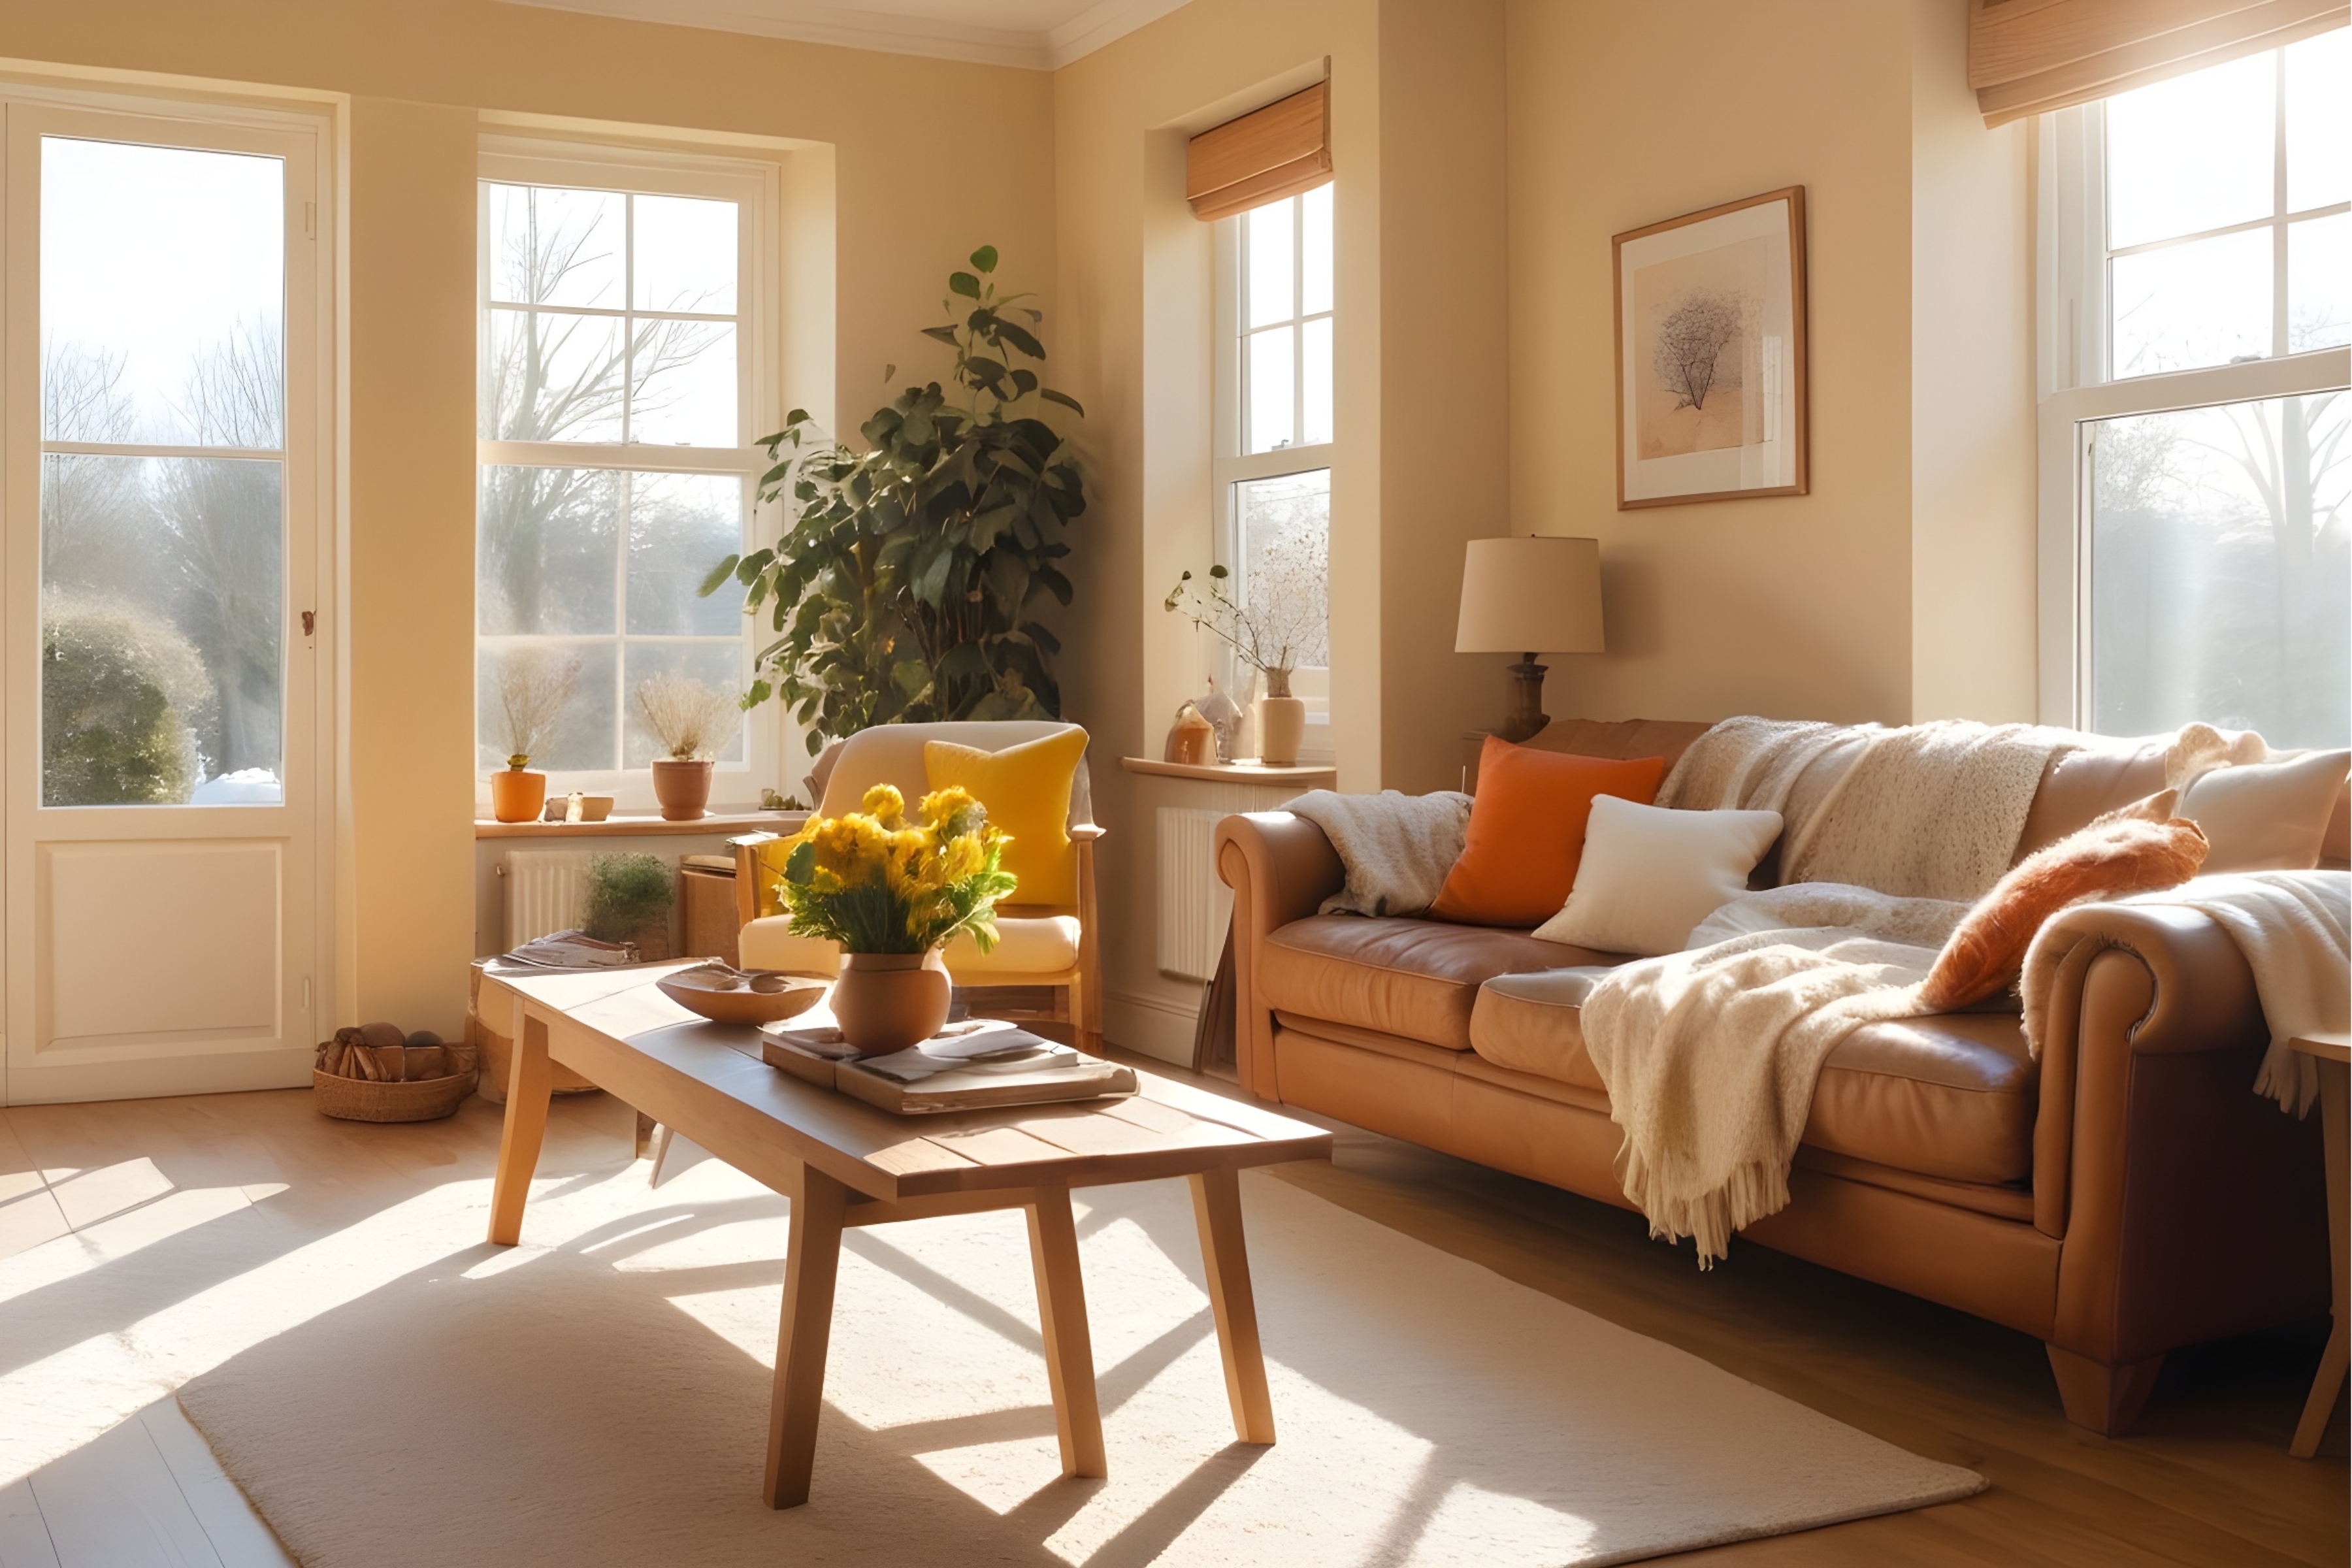 Világos és meleg színű nappali, tele téli napfénnyel, amely bemutatja, hogyan változtathatják meg a meleg színek a téli hangulatot.